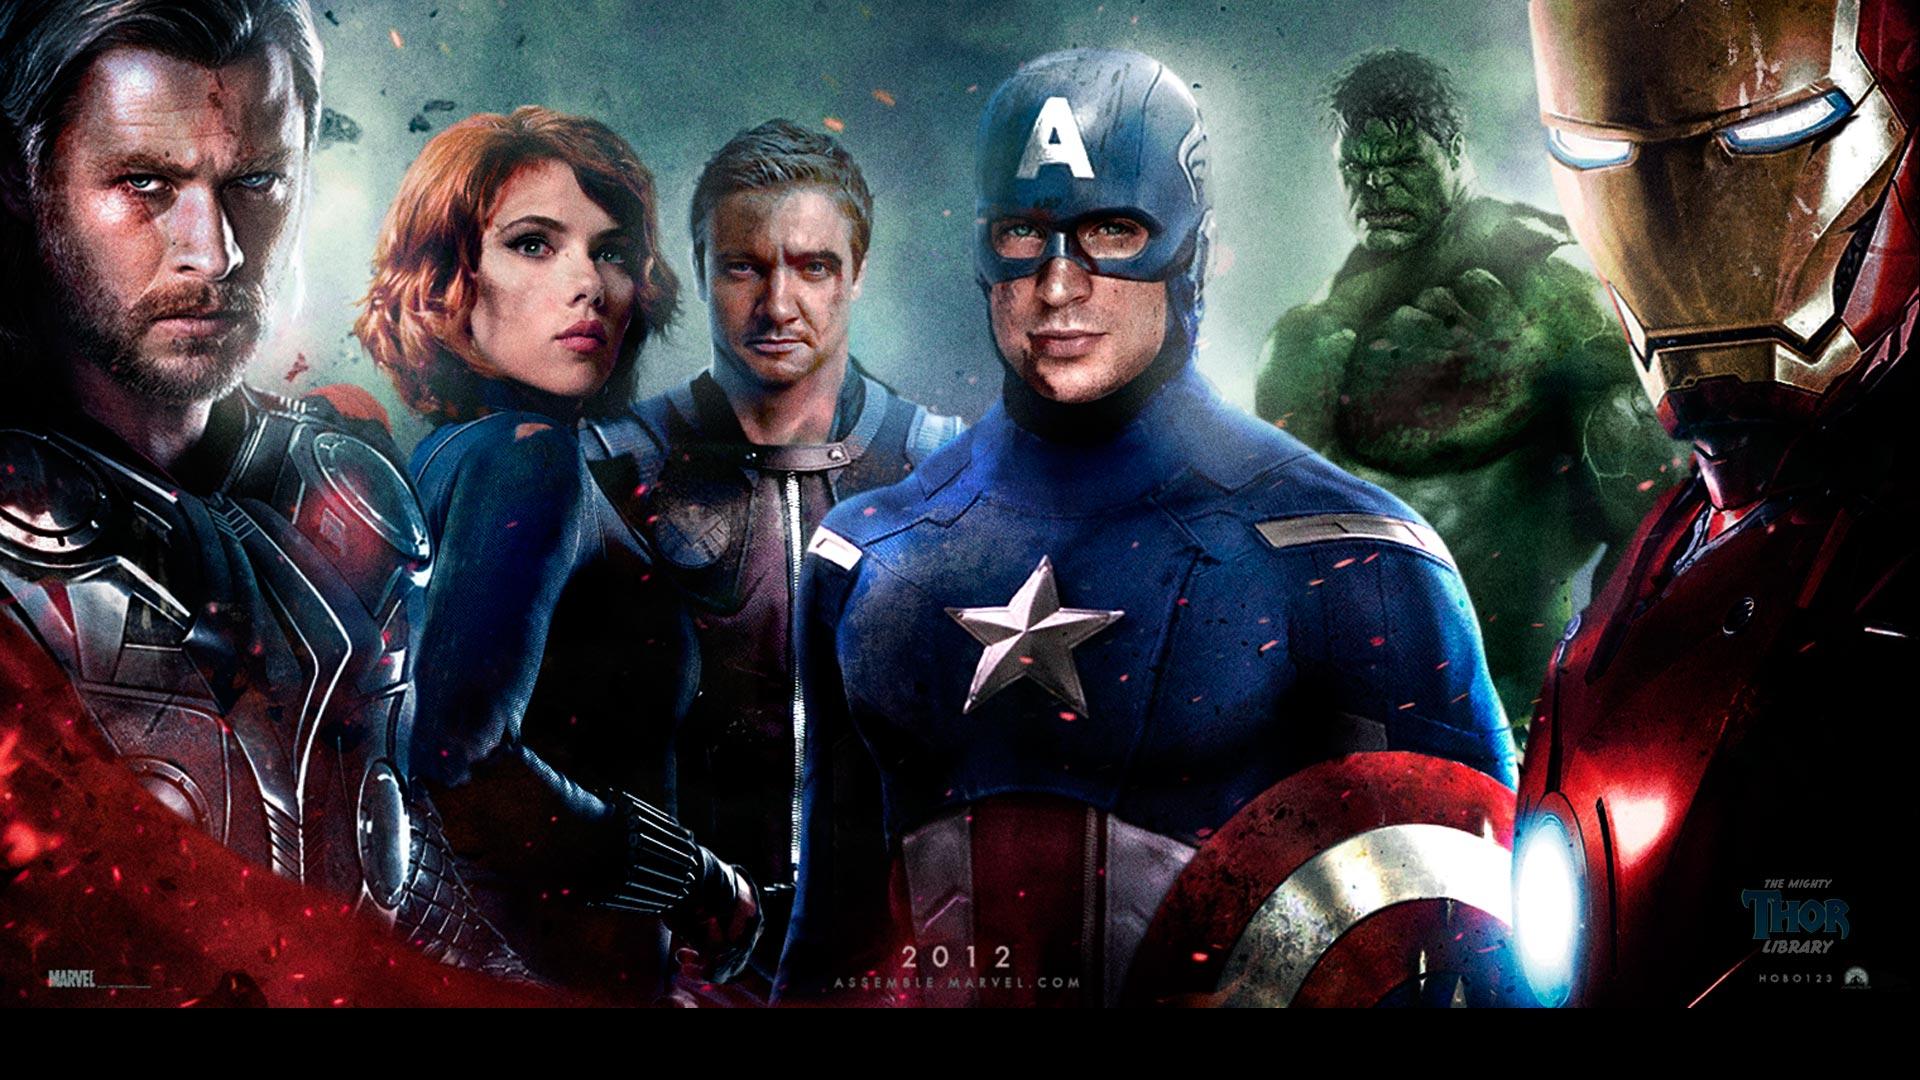 Desktop Pics: The Avengers Wallpaper, The Avengers